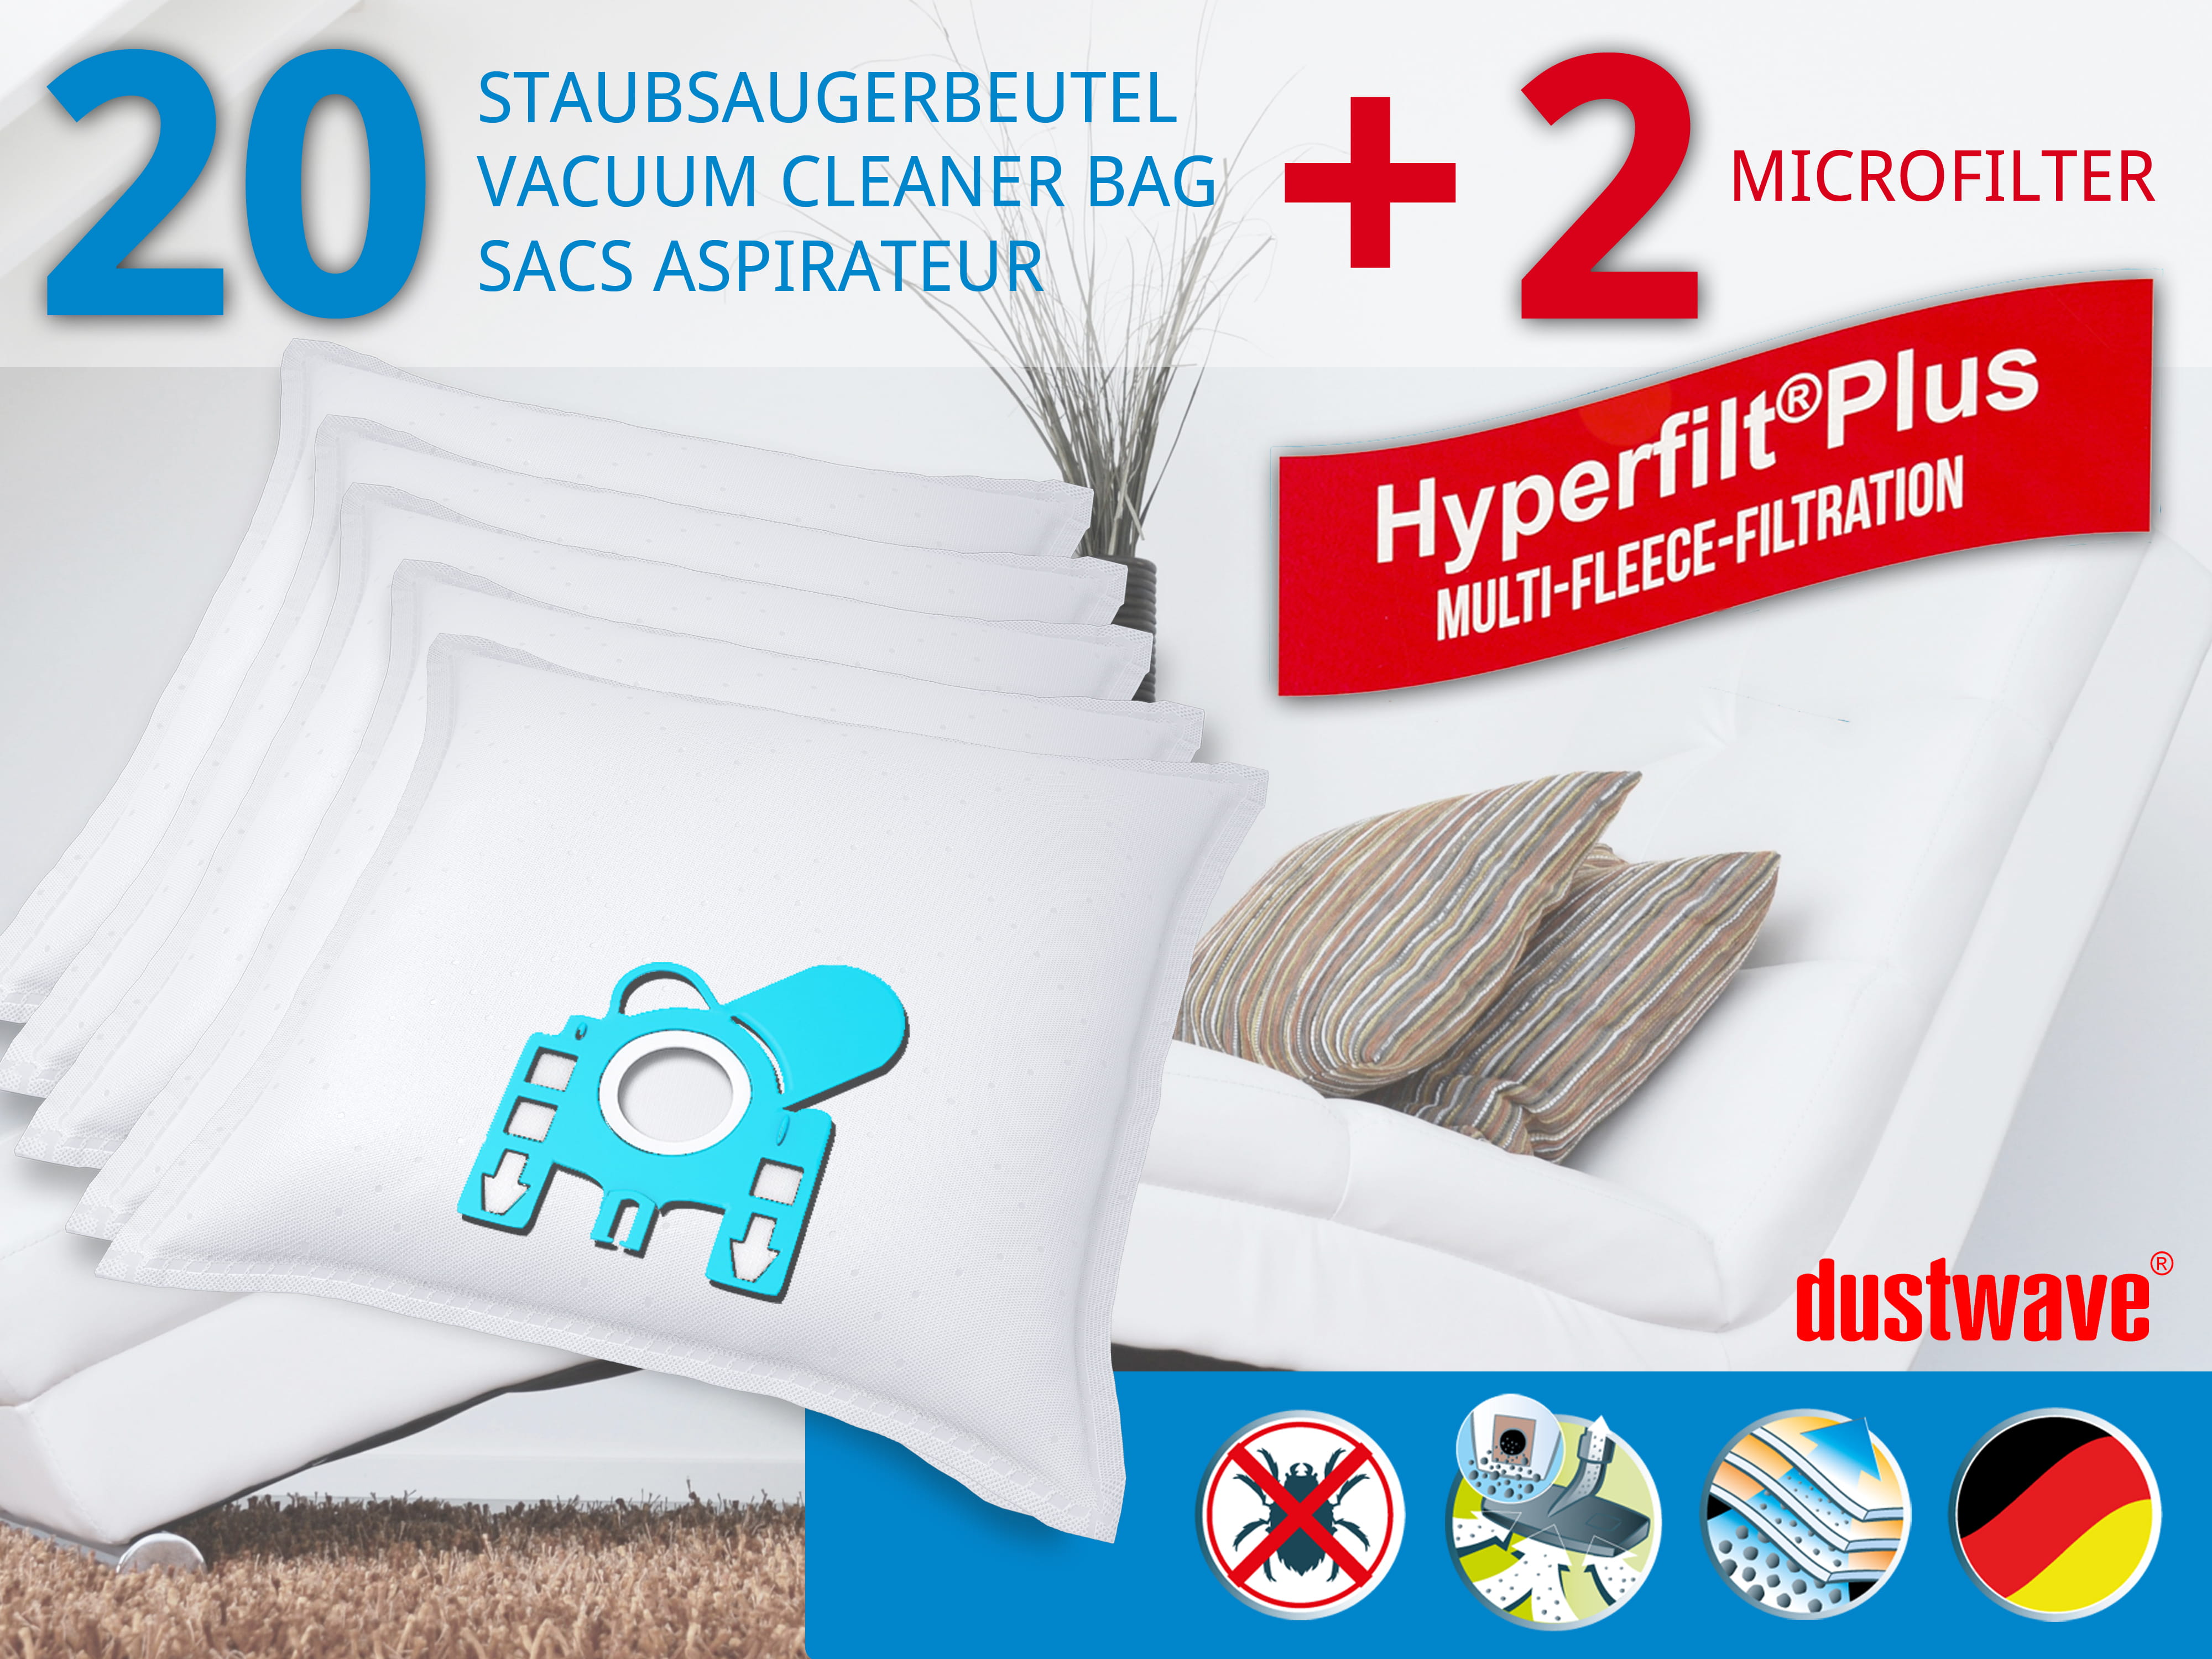 Dustwave® 20 Staubsaugerbeutel für Miele S809 / S 809 - hocheffizient, mehrlagiges Mikrovlies mit Hygieneverschluss - Made in Germany